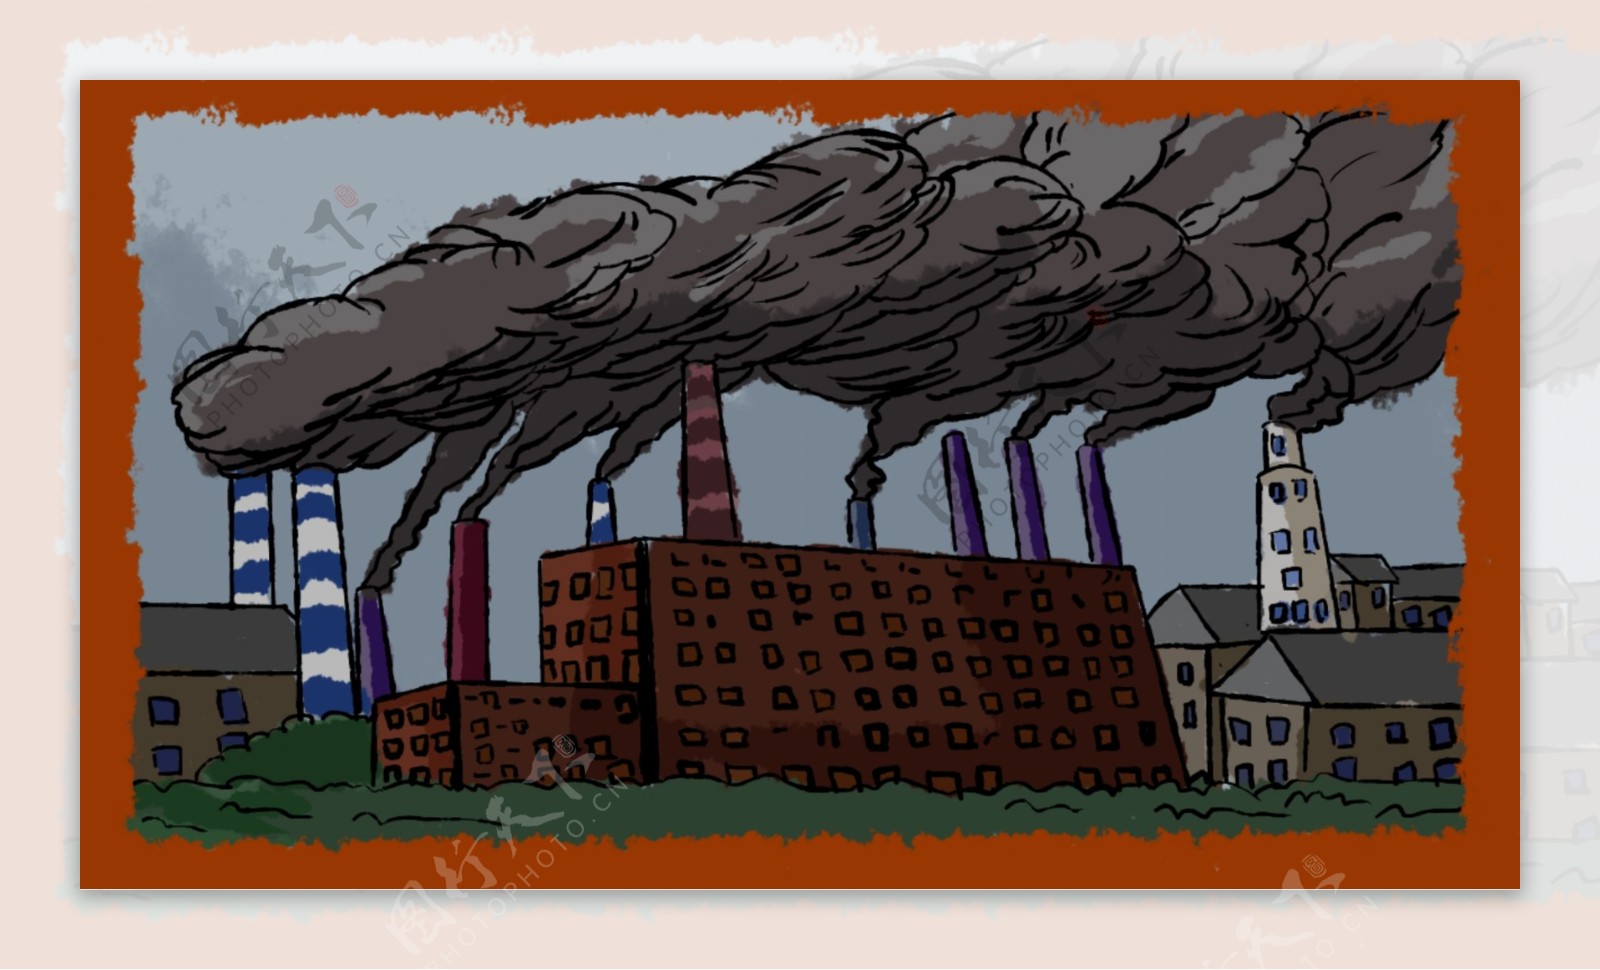 大气污染保护环境公益主题插画